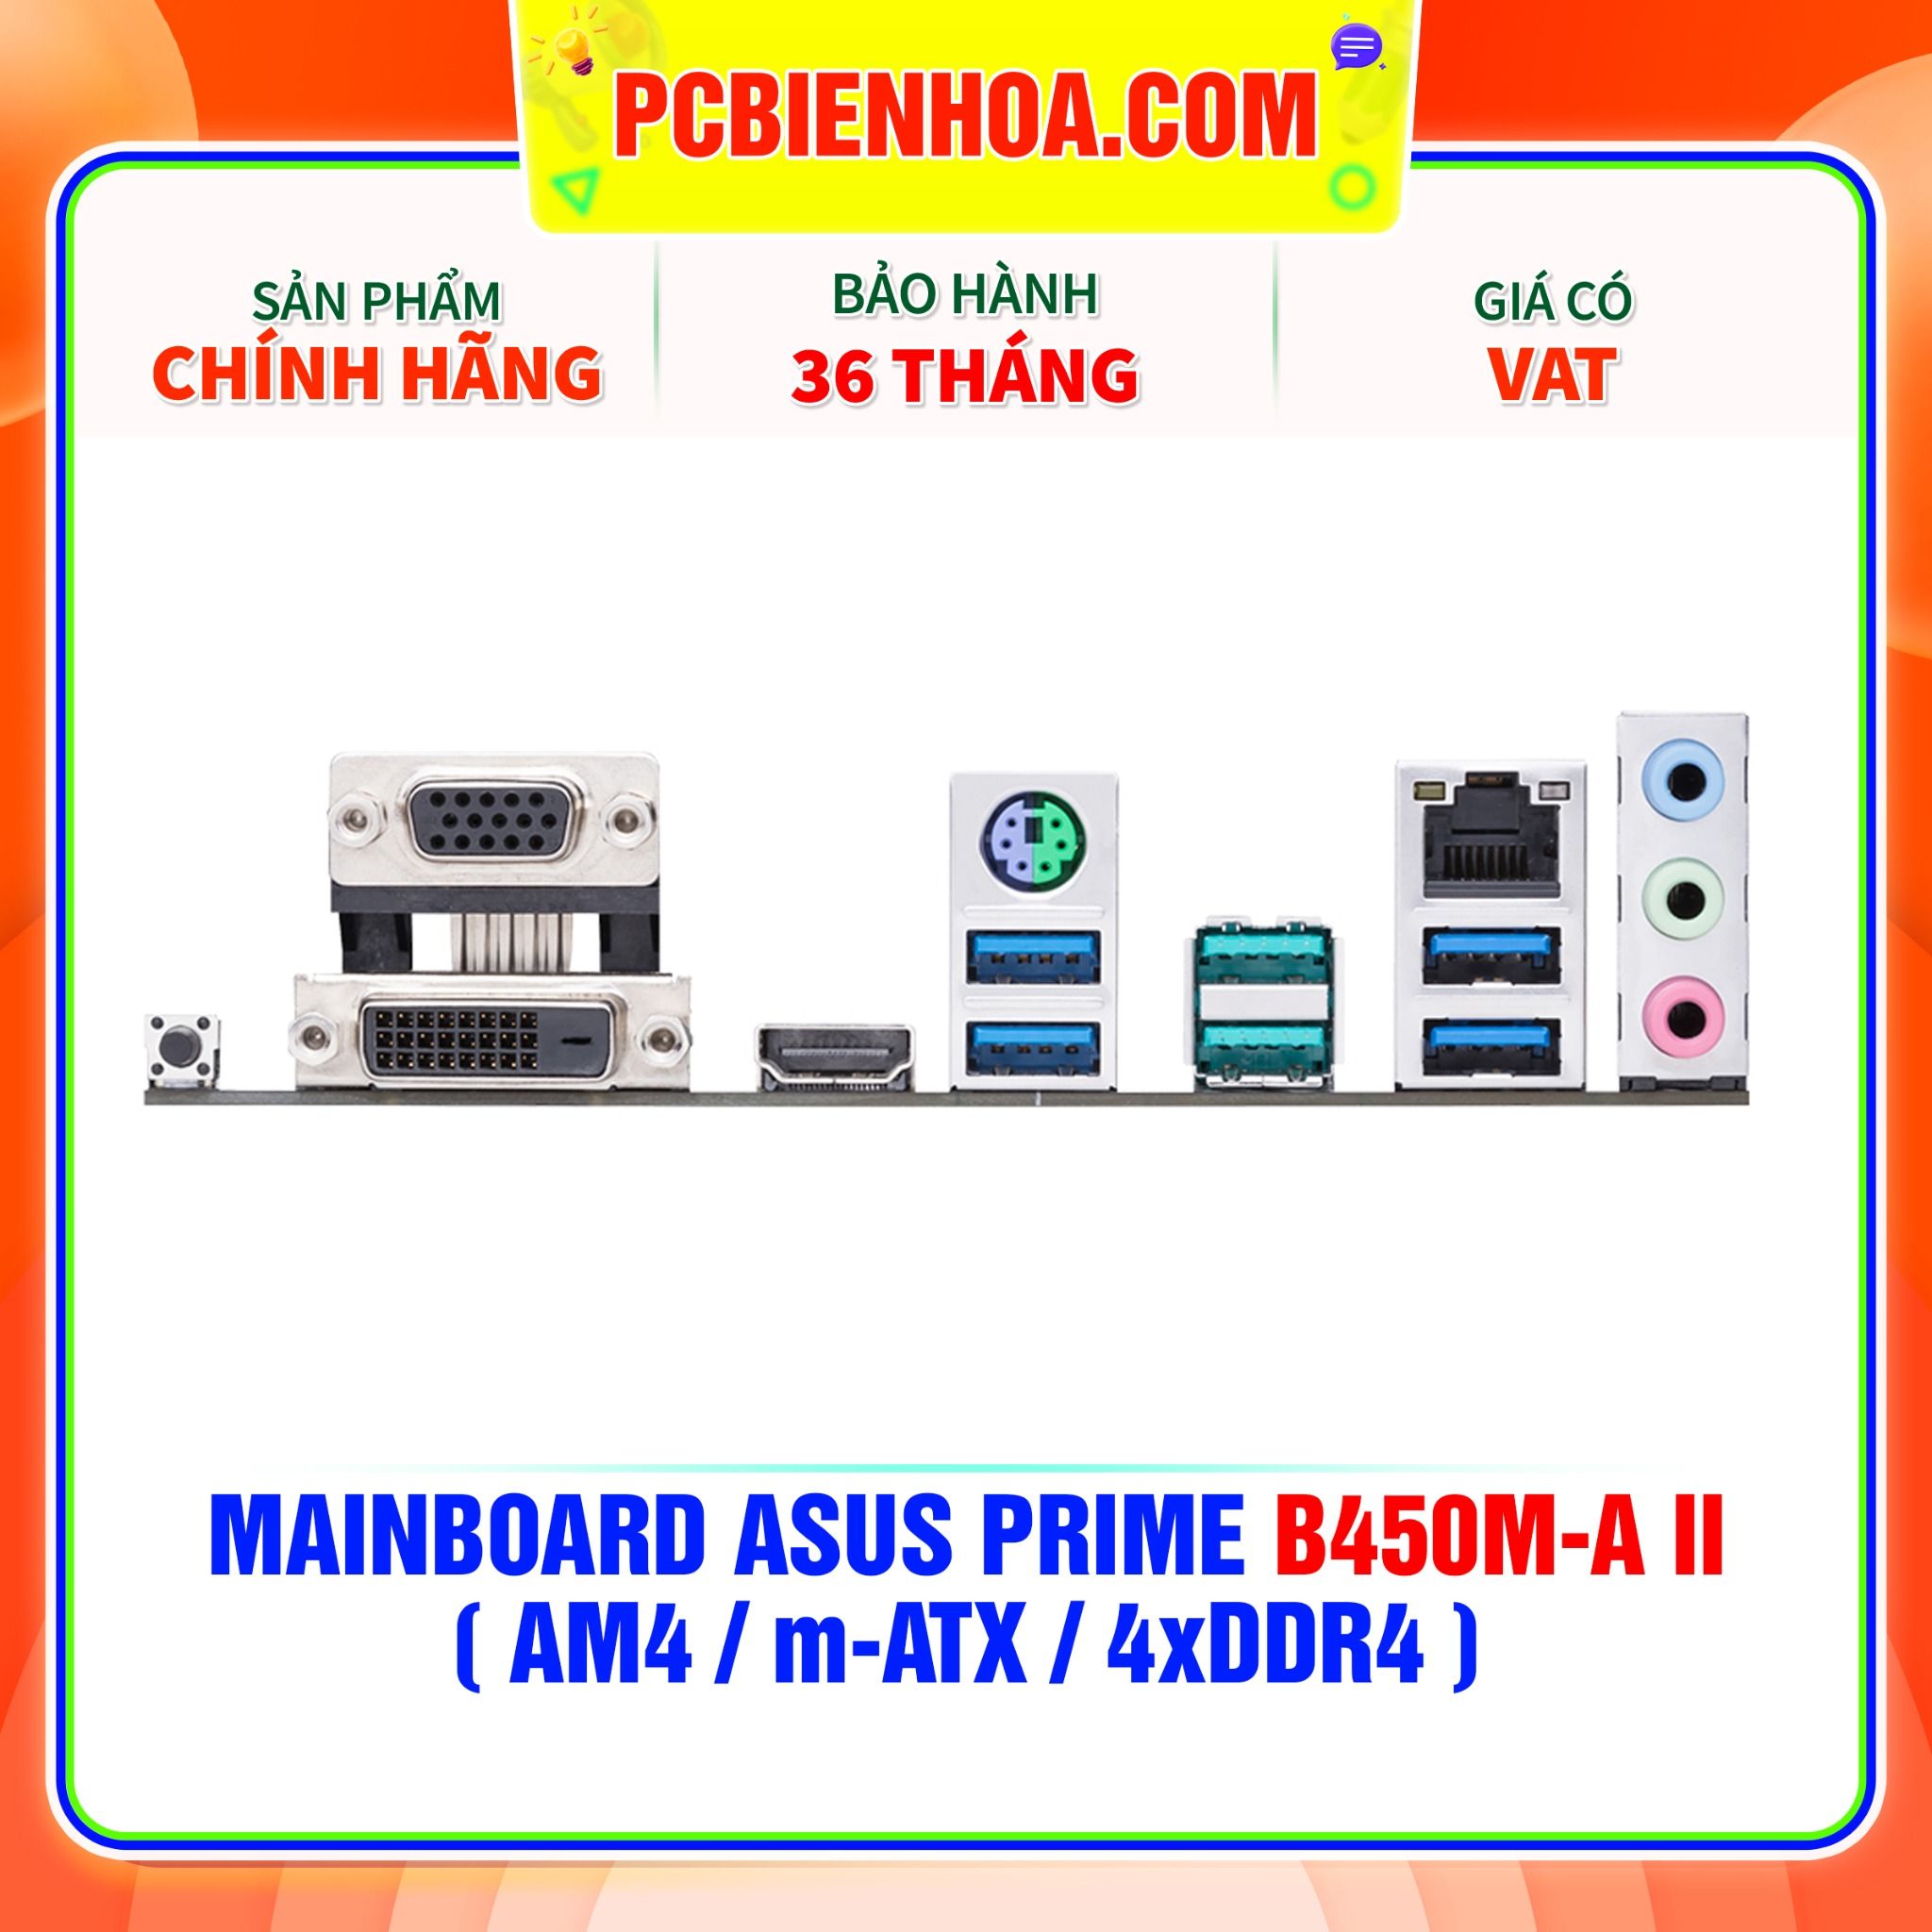  MAINBOARD ASUS PRIME B450M-A II ( AM4 / m-ATX / 4xDDR4 ) 